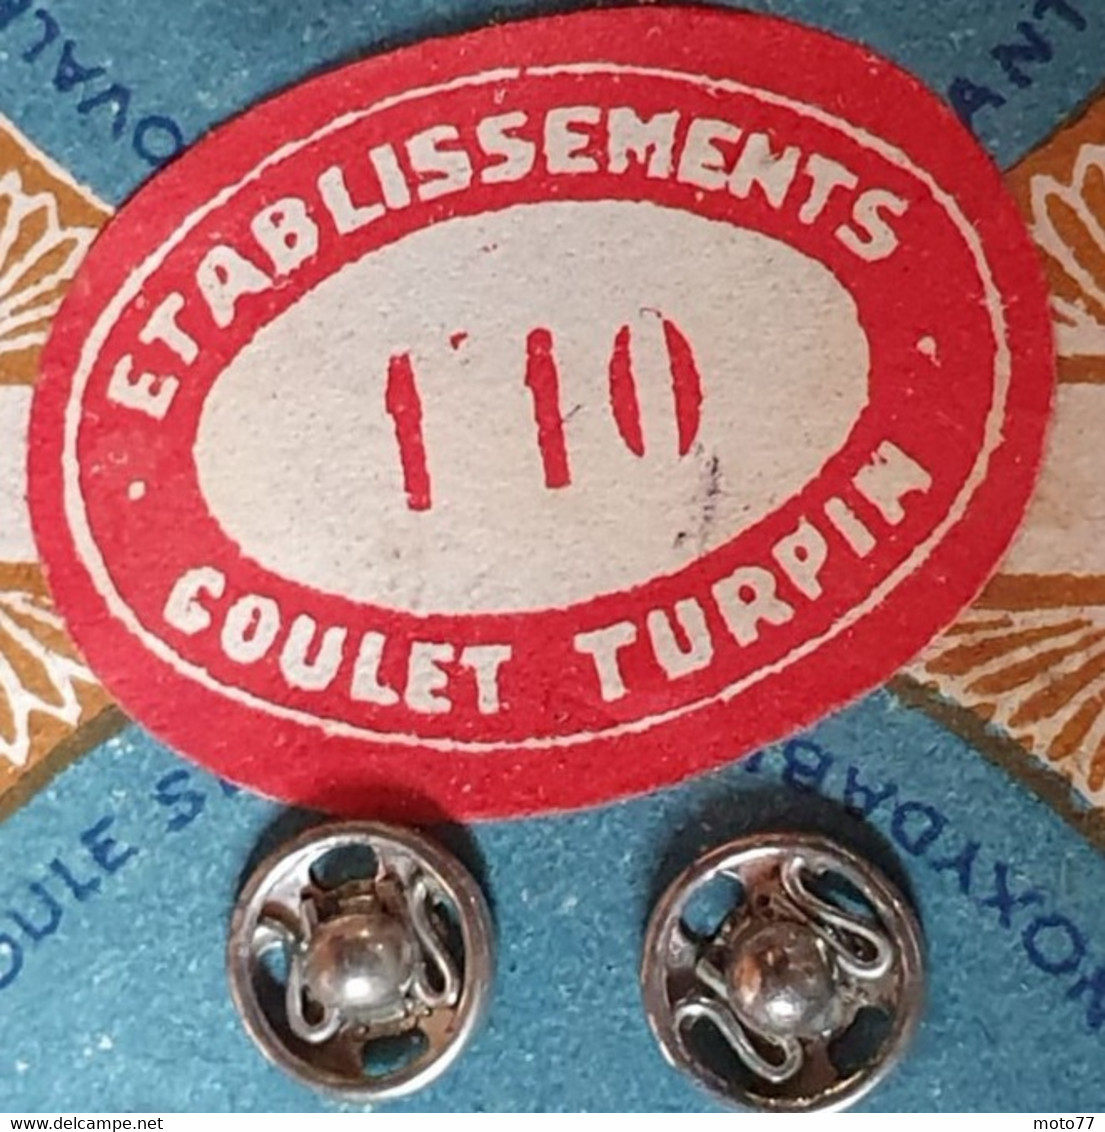 Lot 2 planches BOUTON PRESSION Prophète - Coudre Couture Couturière Mercerie NEUF de STOCK - GOULET TURPIN - vers 1960